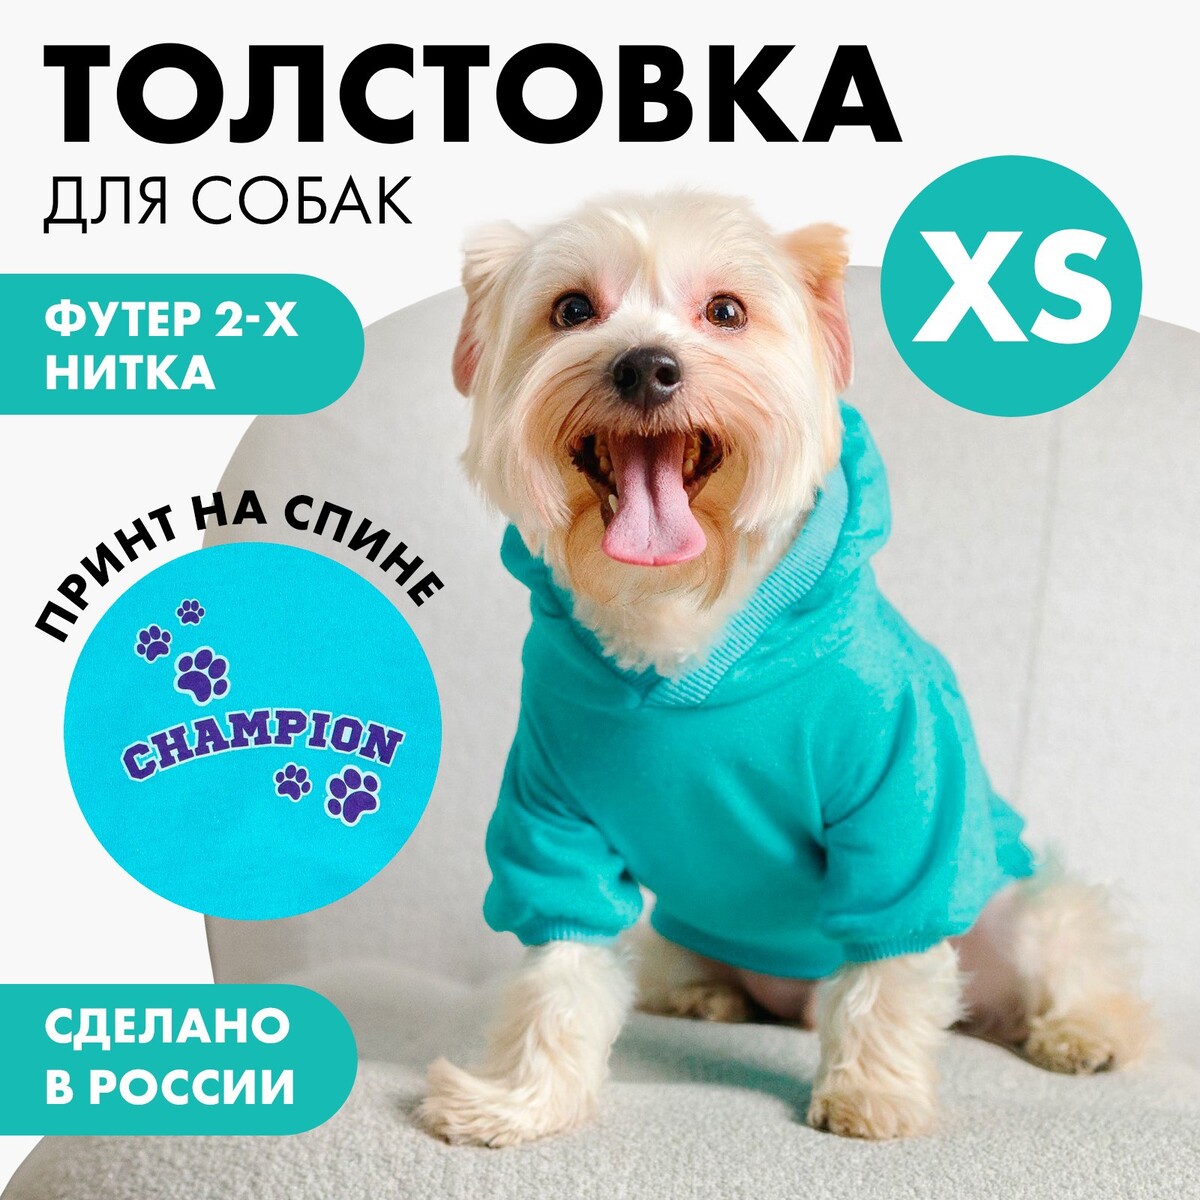 Толстовка champion для собак (футер), размер xs (дс 18, ош 28-30, ог 38-40), голубая толстовка однотонная для собак футер размер xs дс 18 ош 28 30 ог 38 40 серая